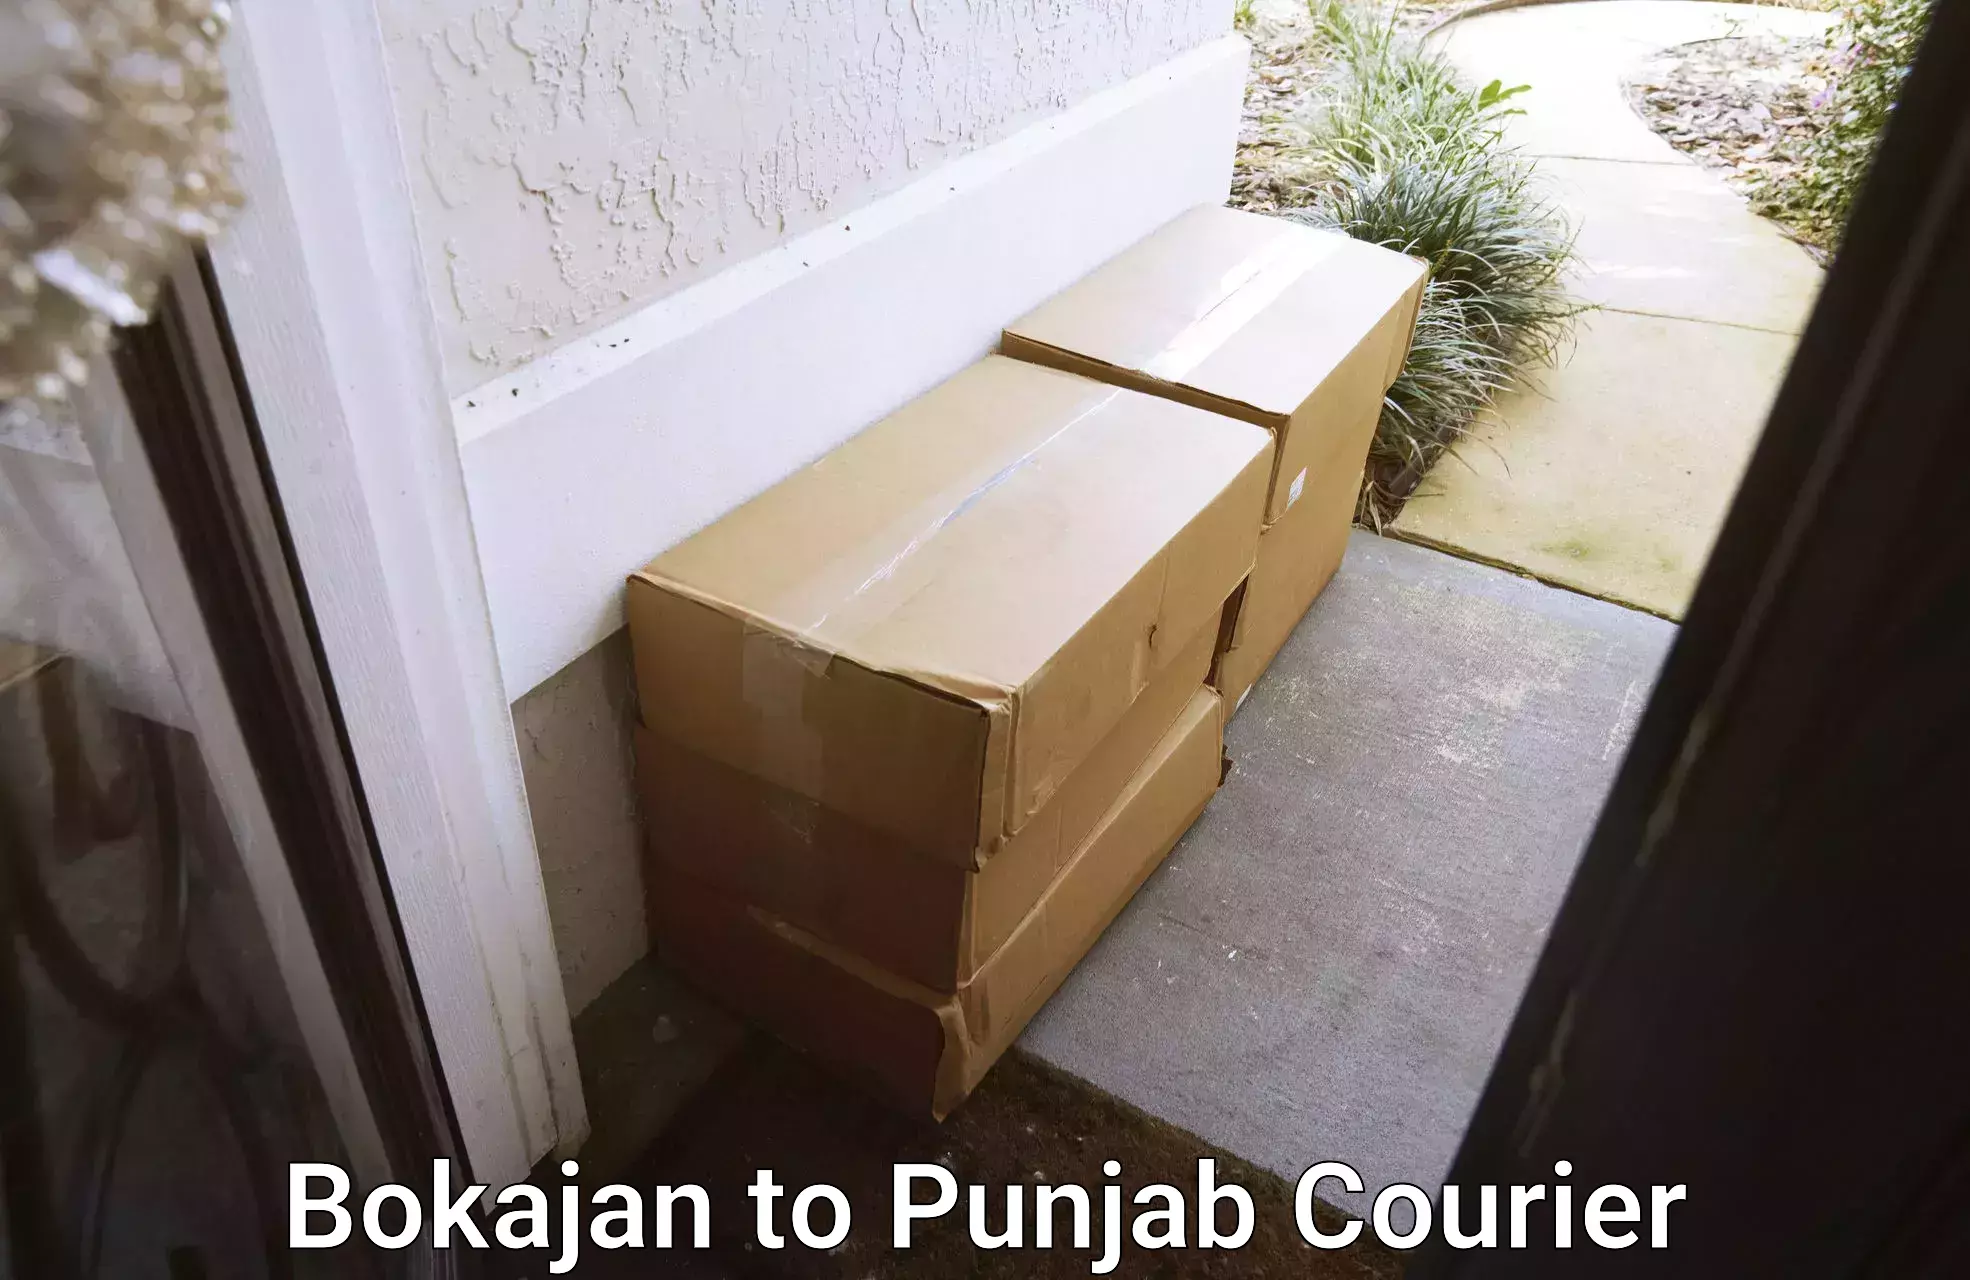 Expedited shipping methods in Bokajan to Punjab